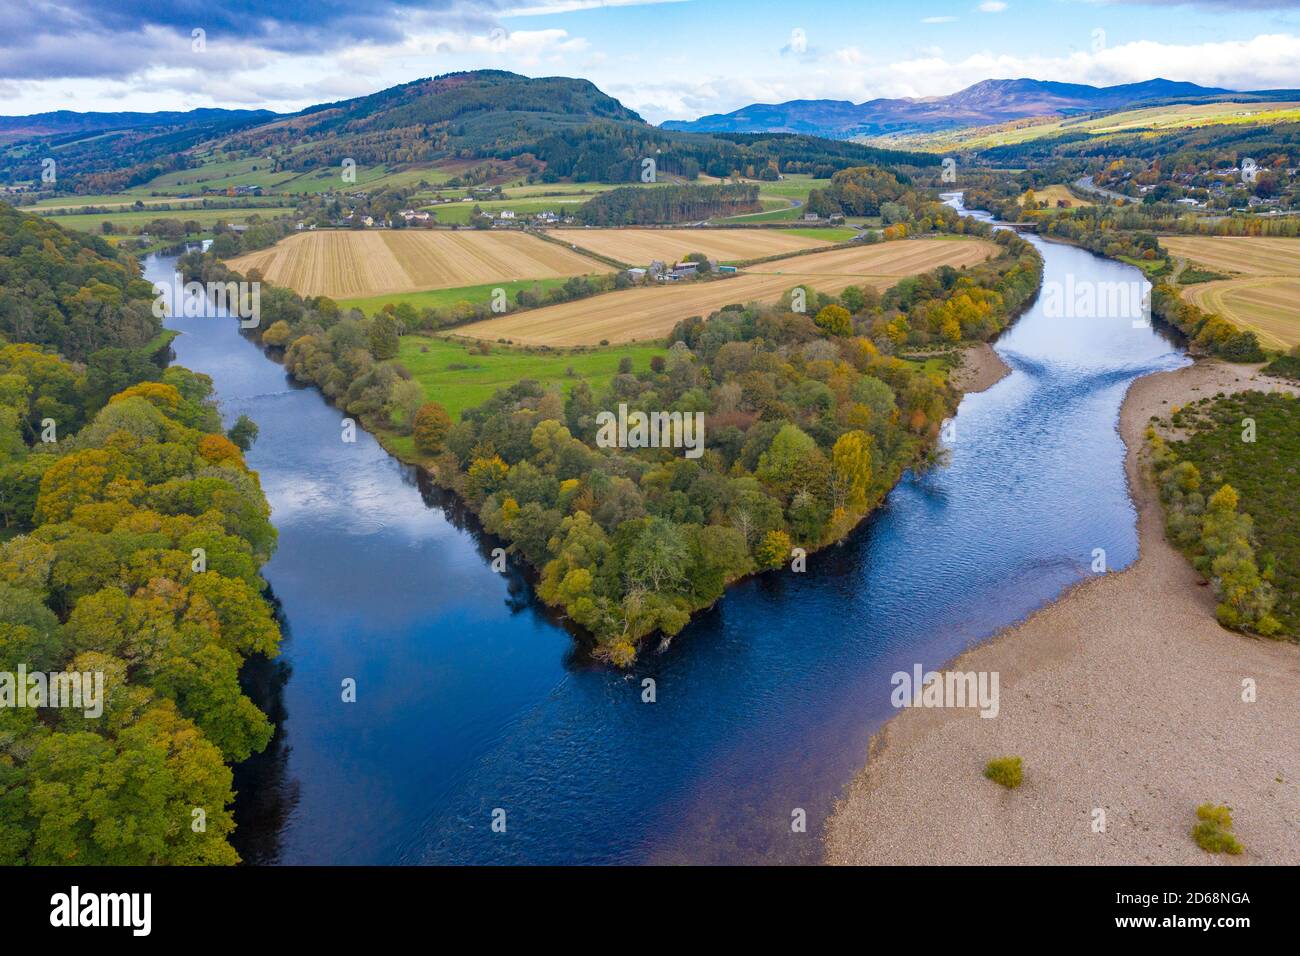 Vista de otoño de la confluencia del río Tay y el río Tummel en Ballinluig. El río Tay (arriba) y el río Tummel son dos de los ríos ScotlandÕs salmón más importantes. Foto de stock